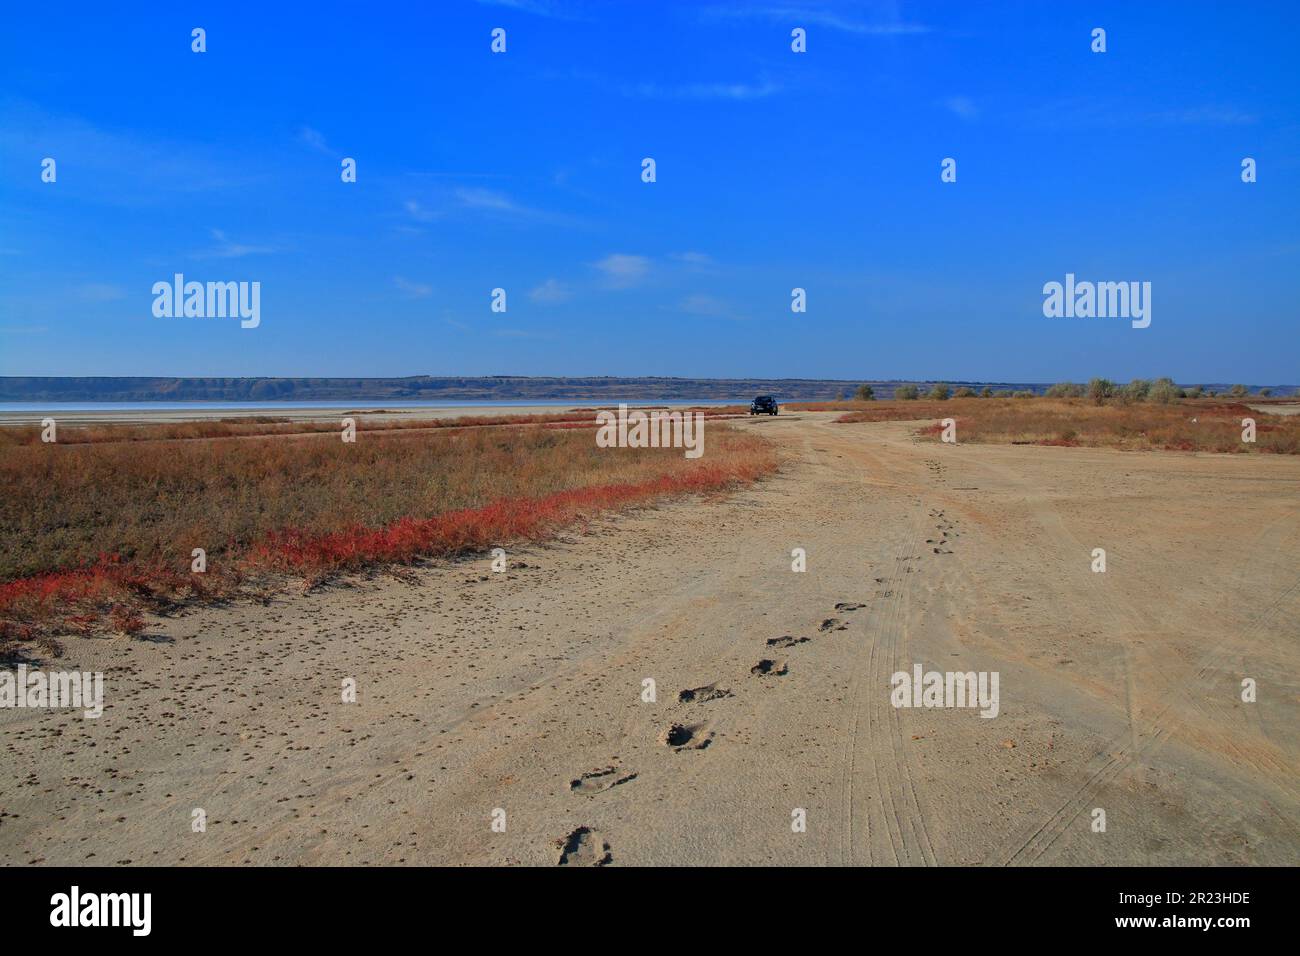 La photo a été prise en Ukraine dans la région d'Odessa. La photo montre la partie sauvage de steppe près de l'estuaire. Banque D'Images